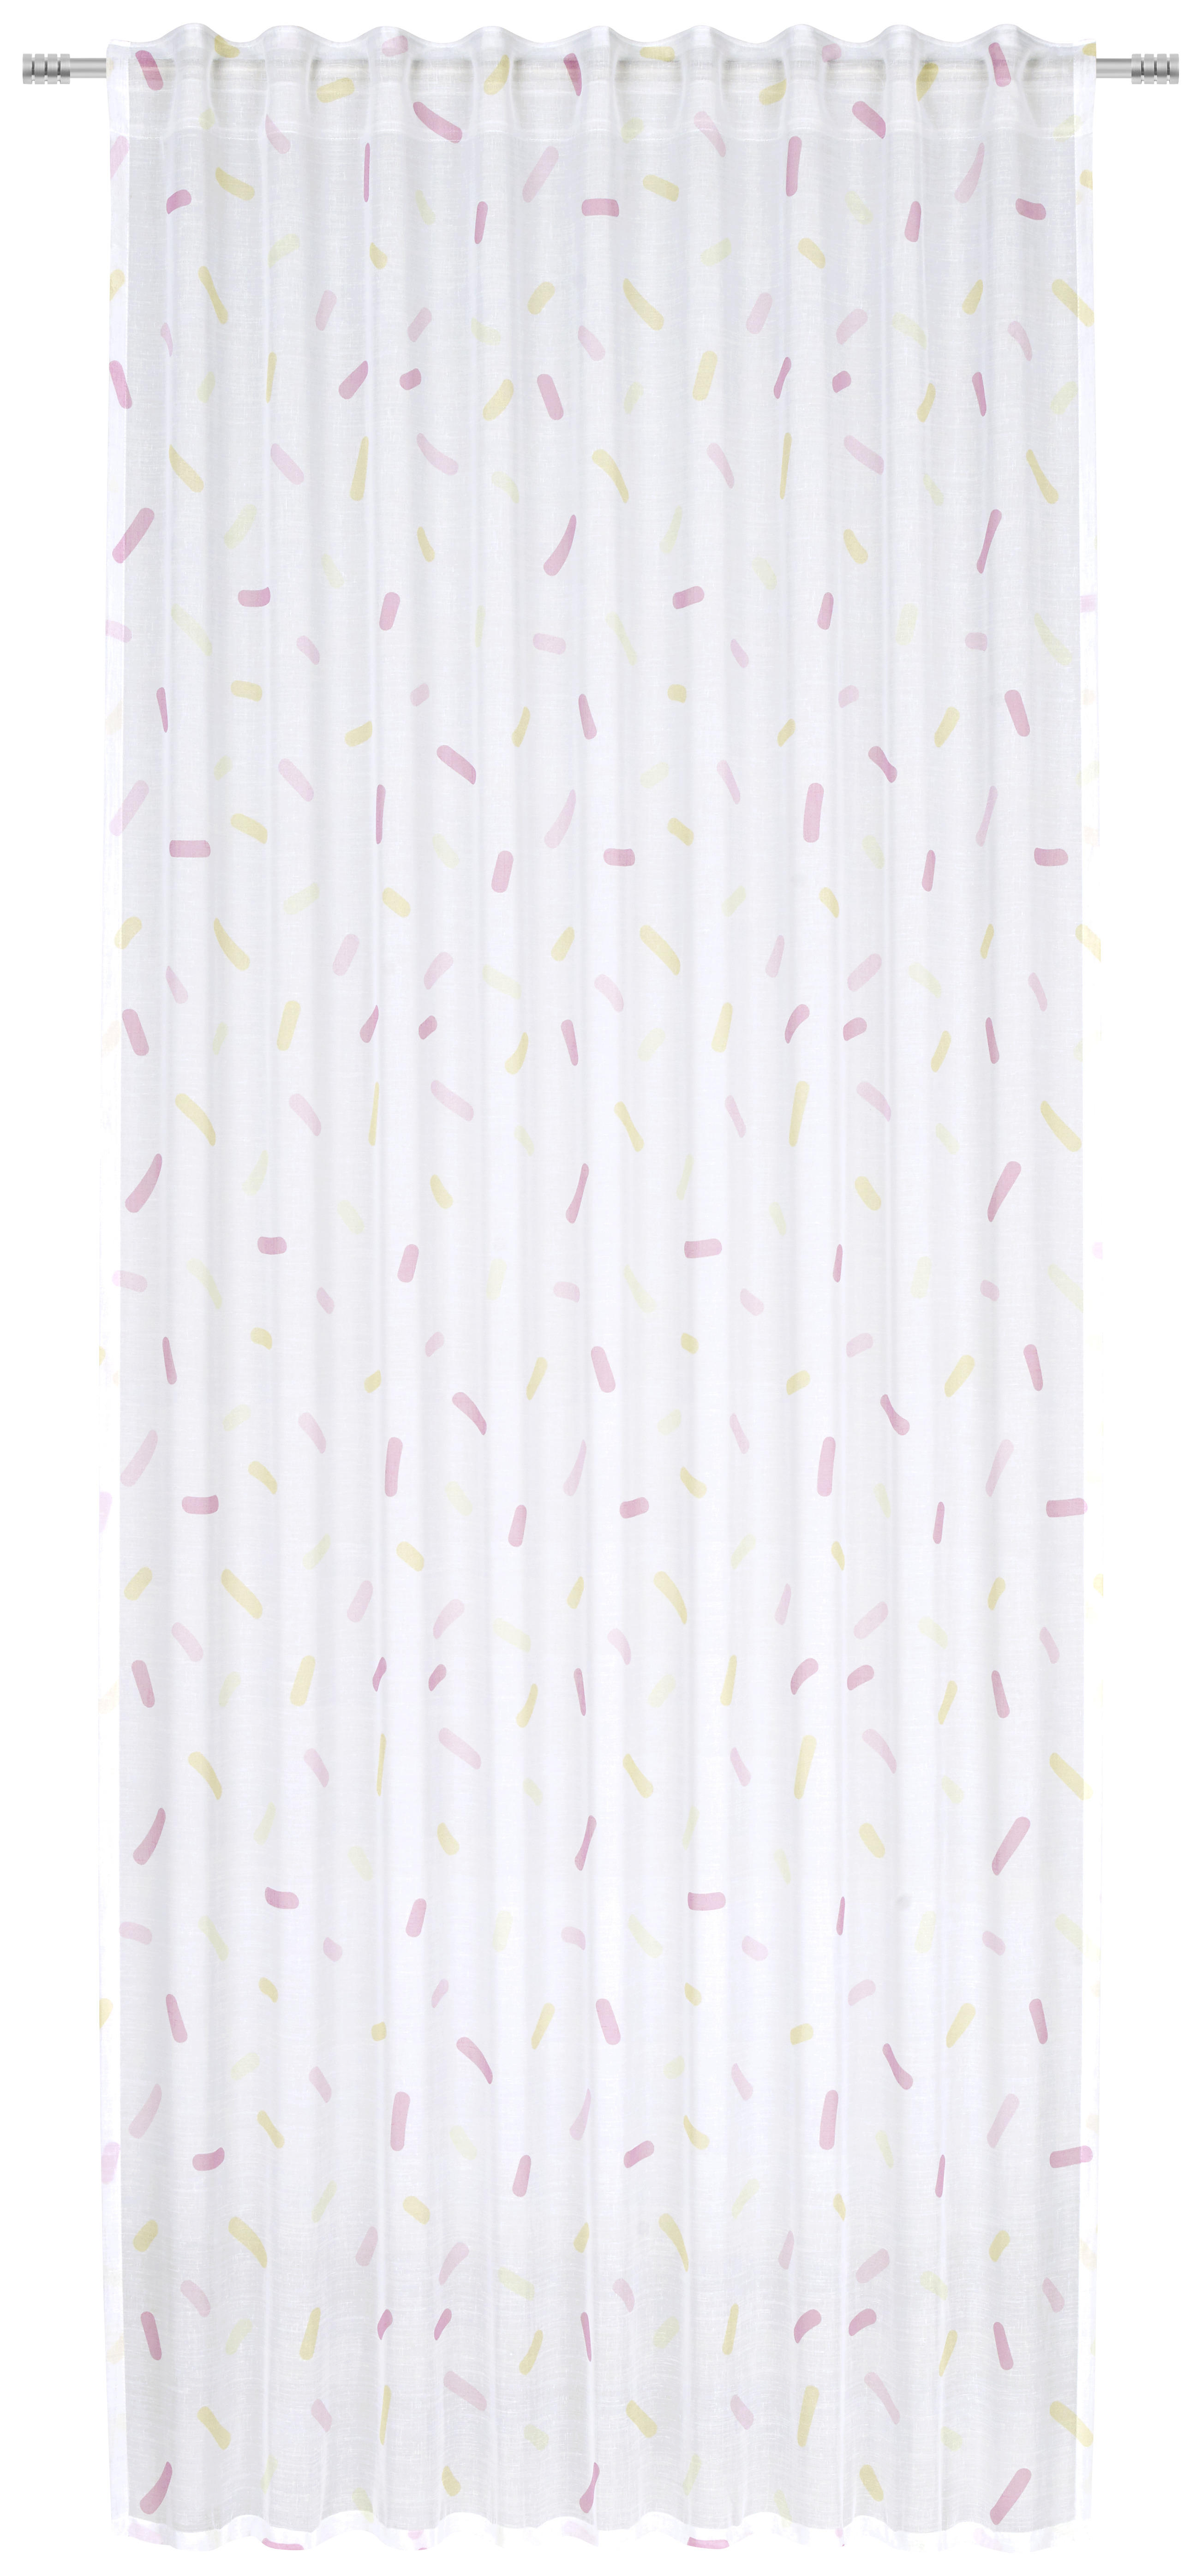 KINDERVORHANG transparent  140/245 cm  - Gelb/Rot, Trend, Textil (140/245cm) - Ben'n'jen